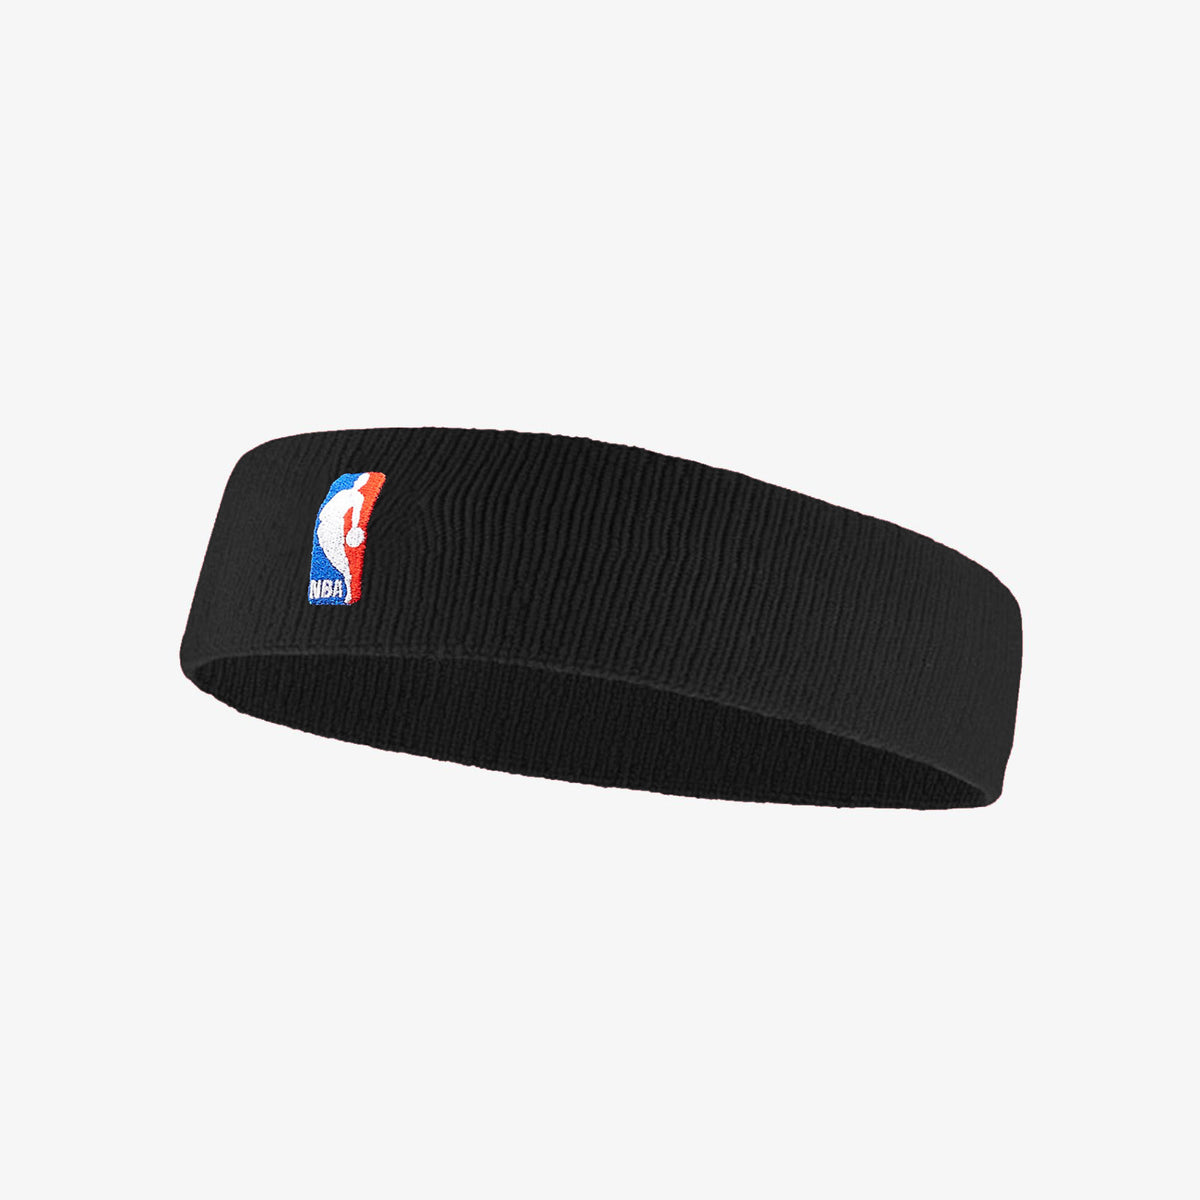 Nike NBA White Headband